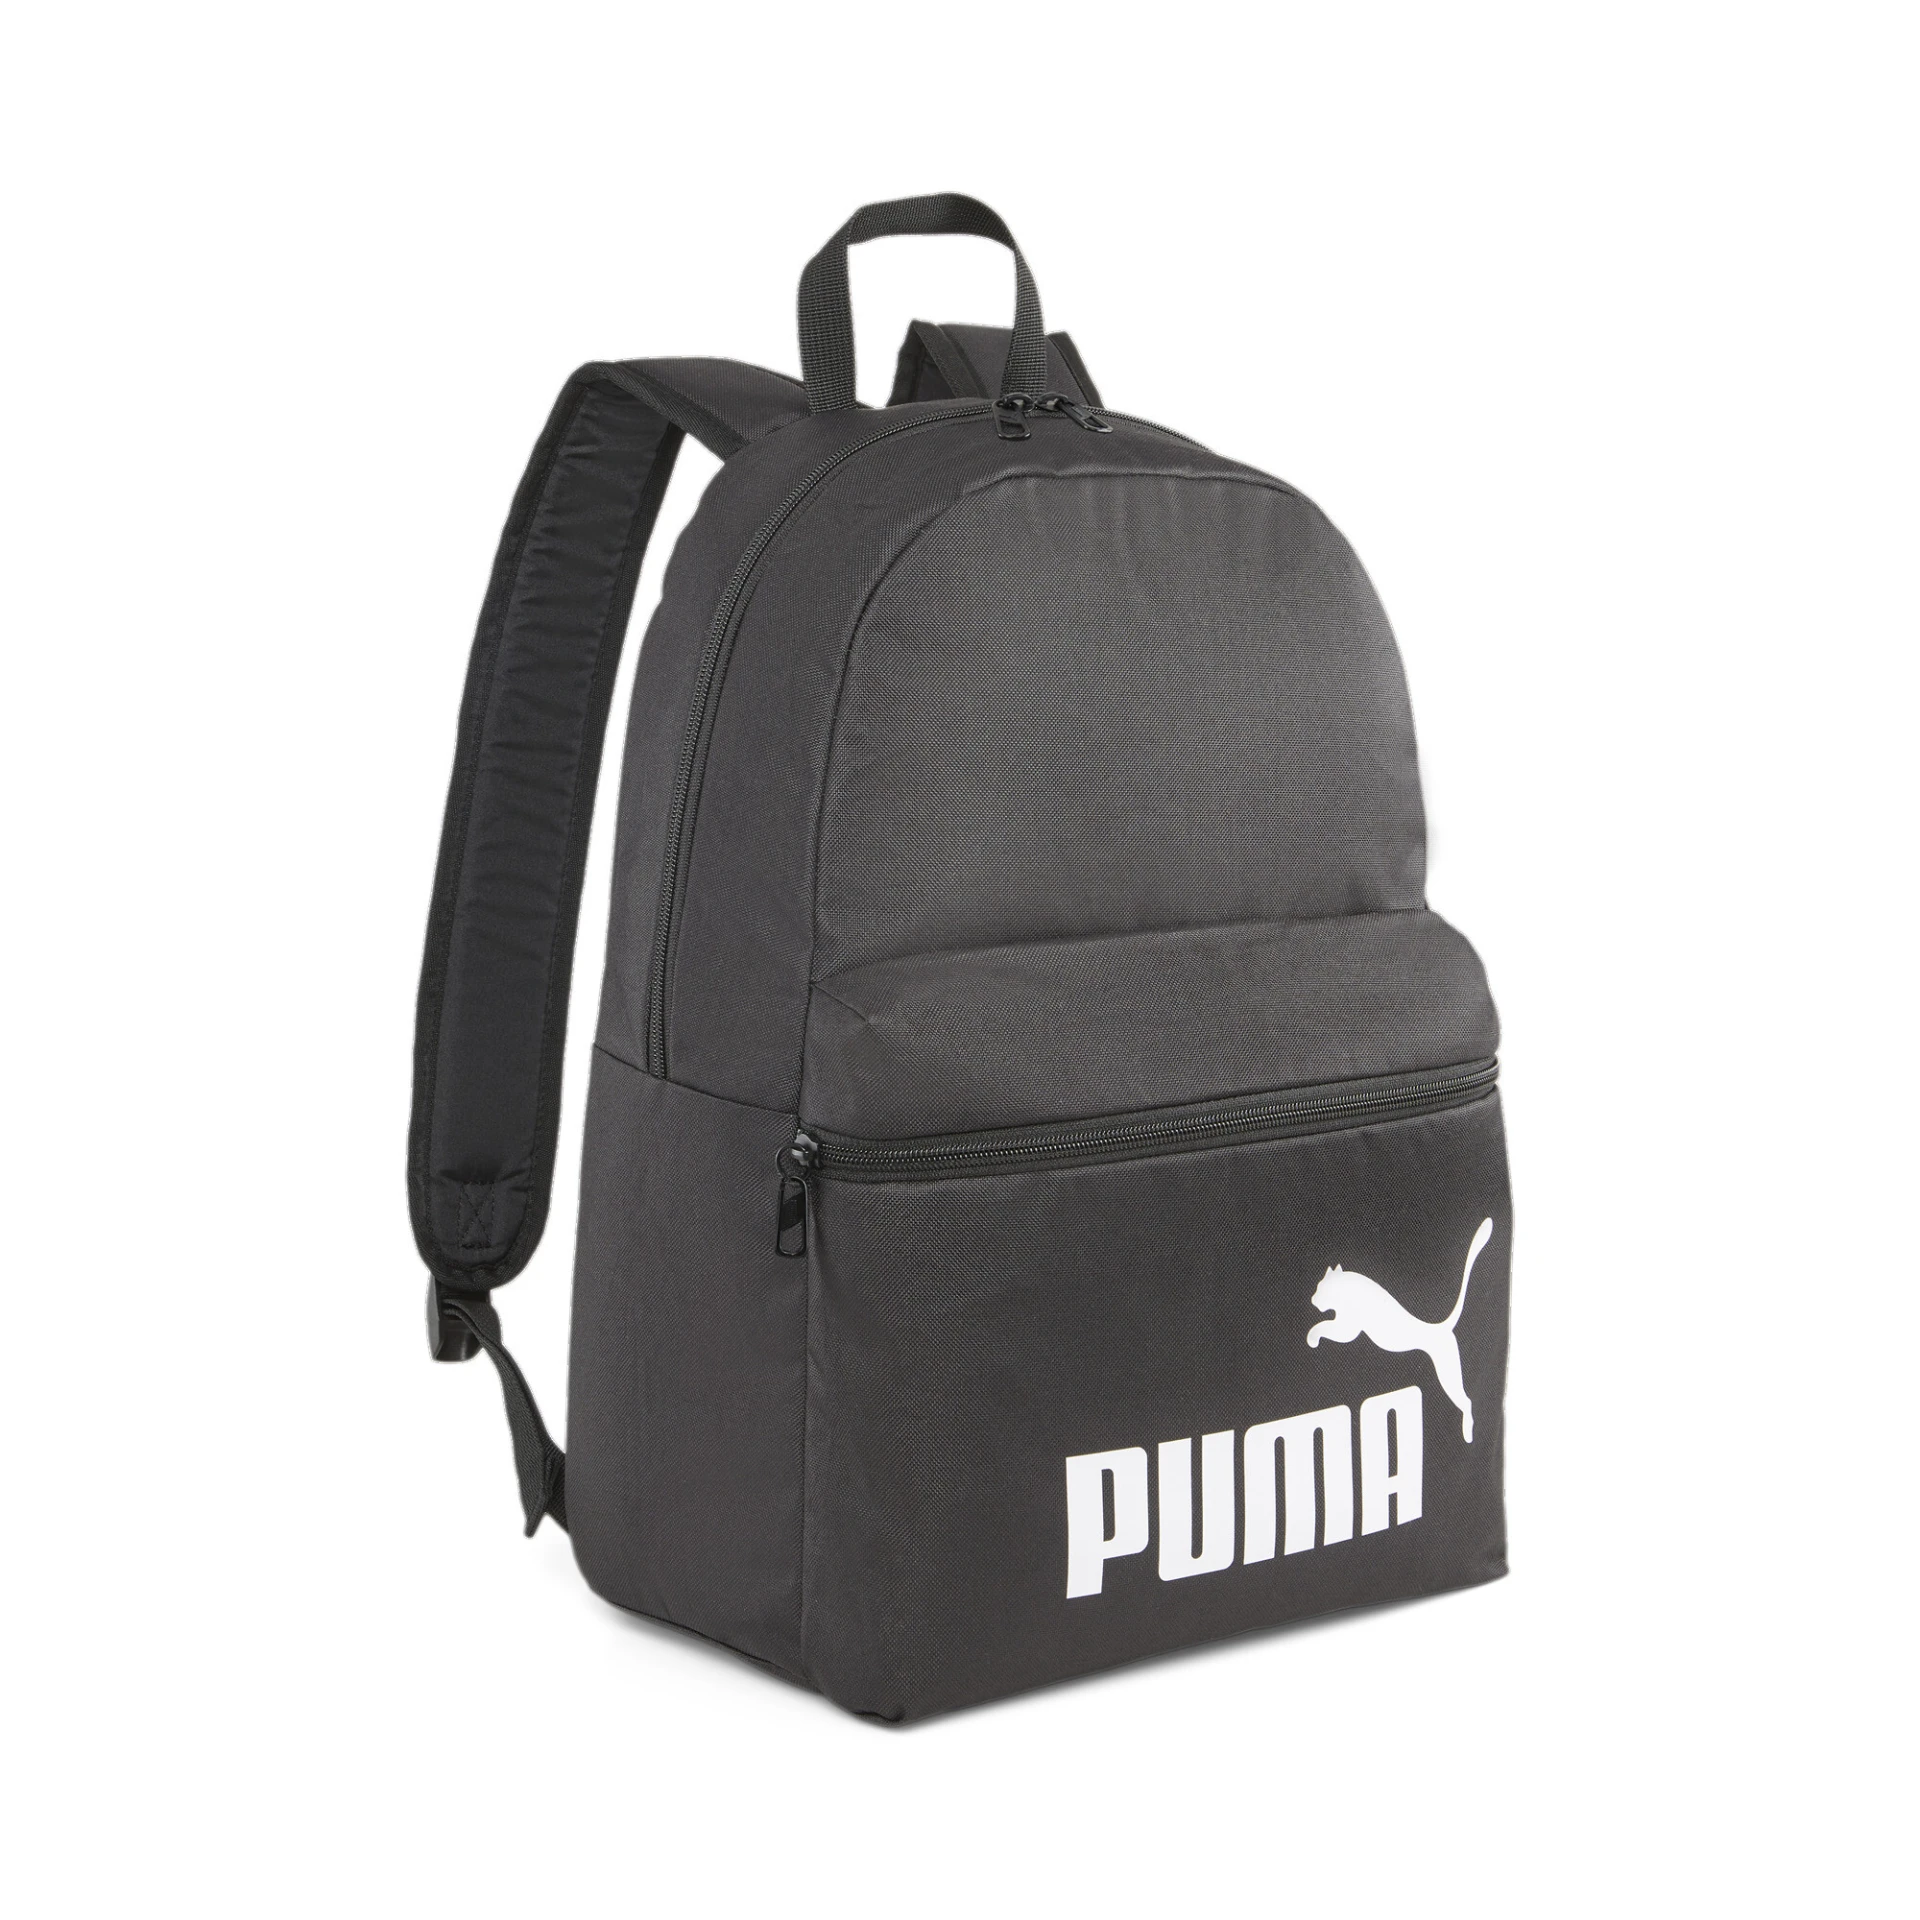 PUMA Phase_Backpack 079943 001 PUMA BLACK